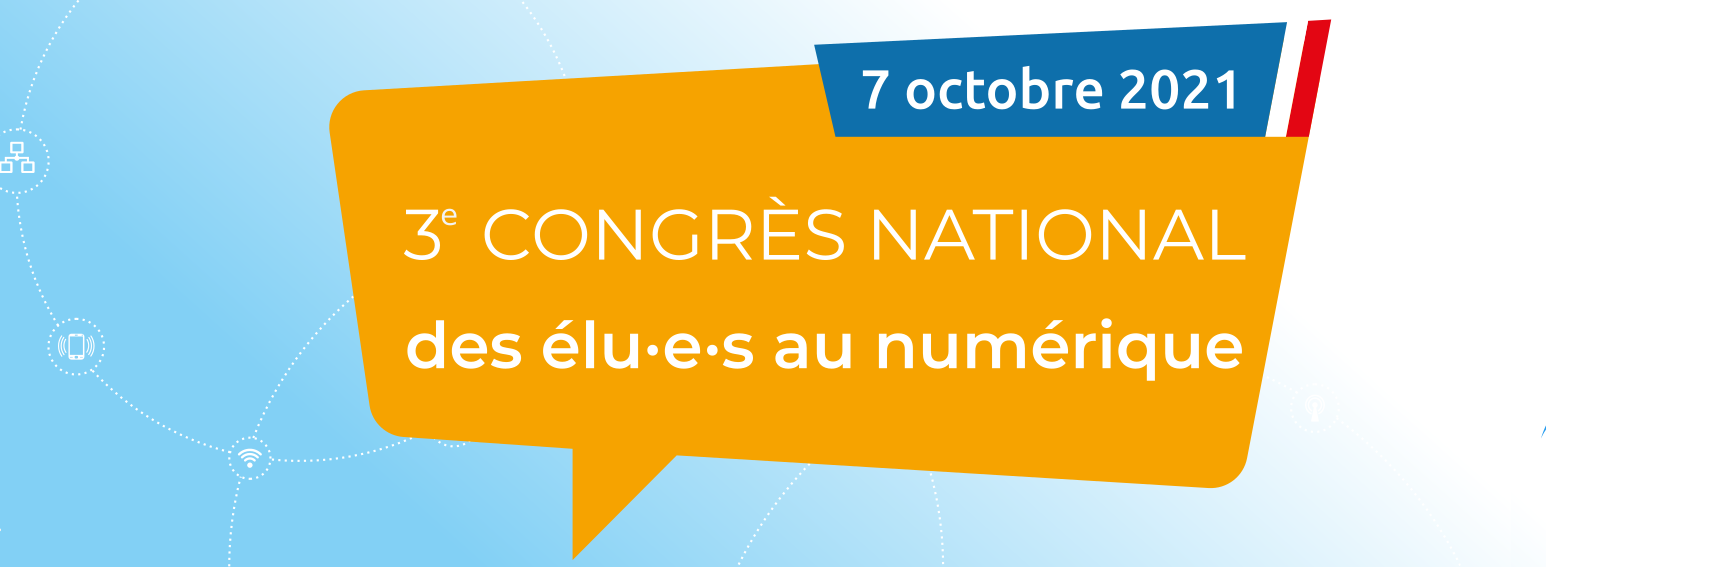 3ème congrès national des élu·e·s au numérique